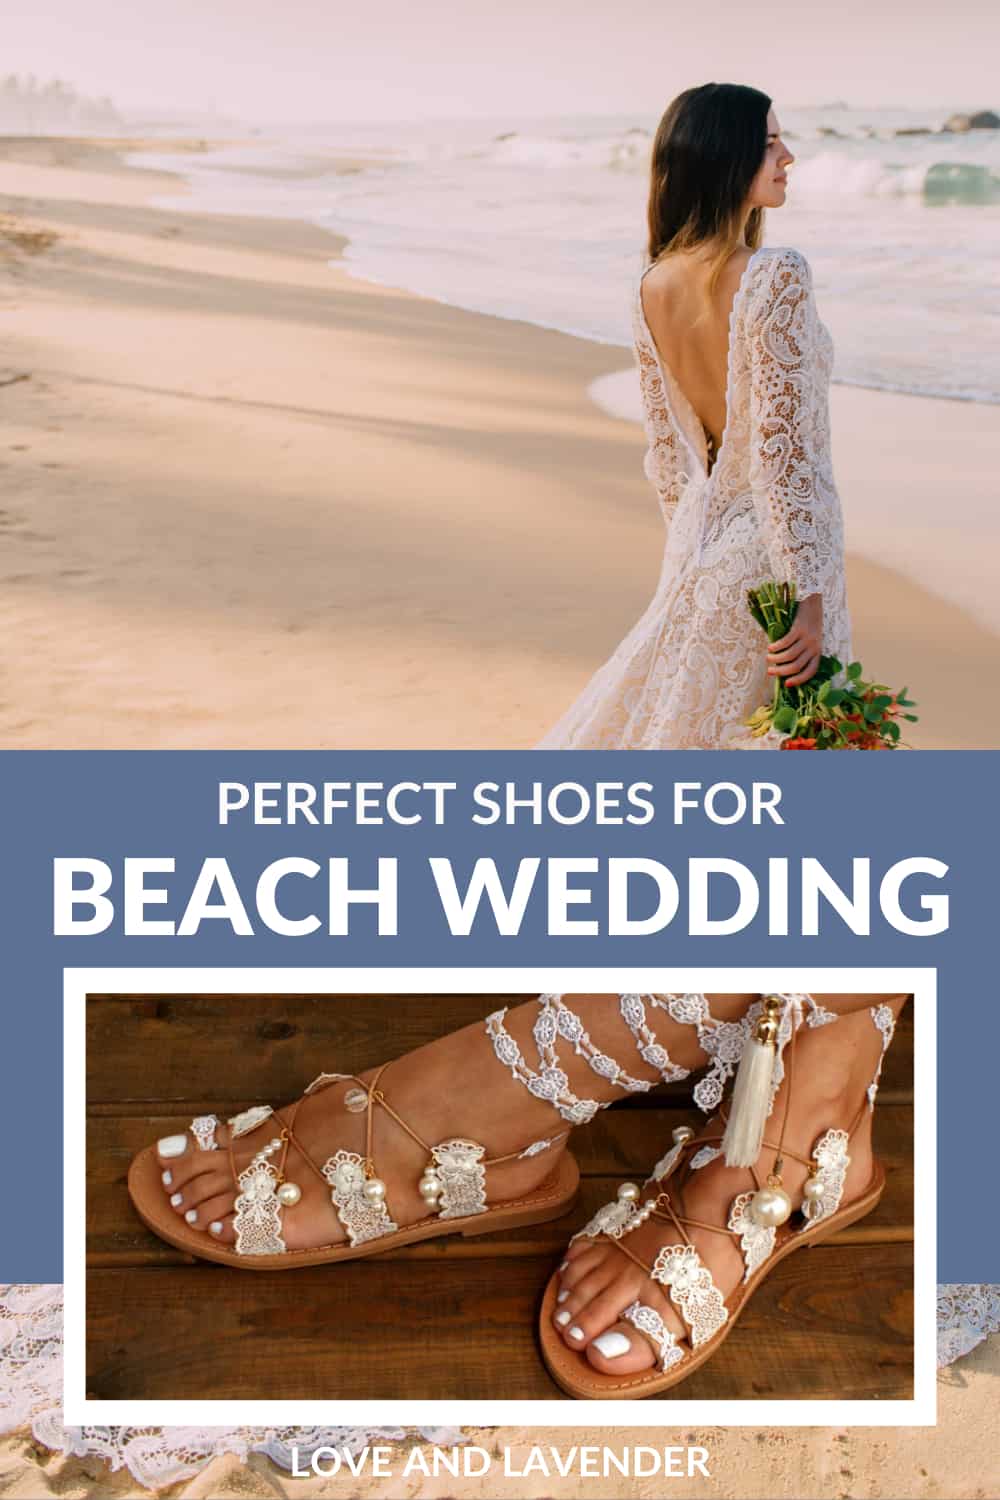 33 Beach Wedding Shoes - Pinterest pin